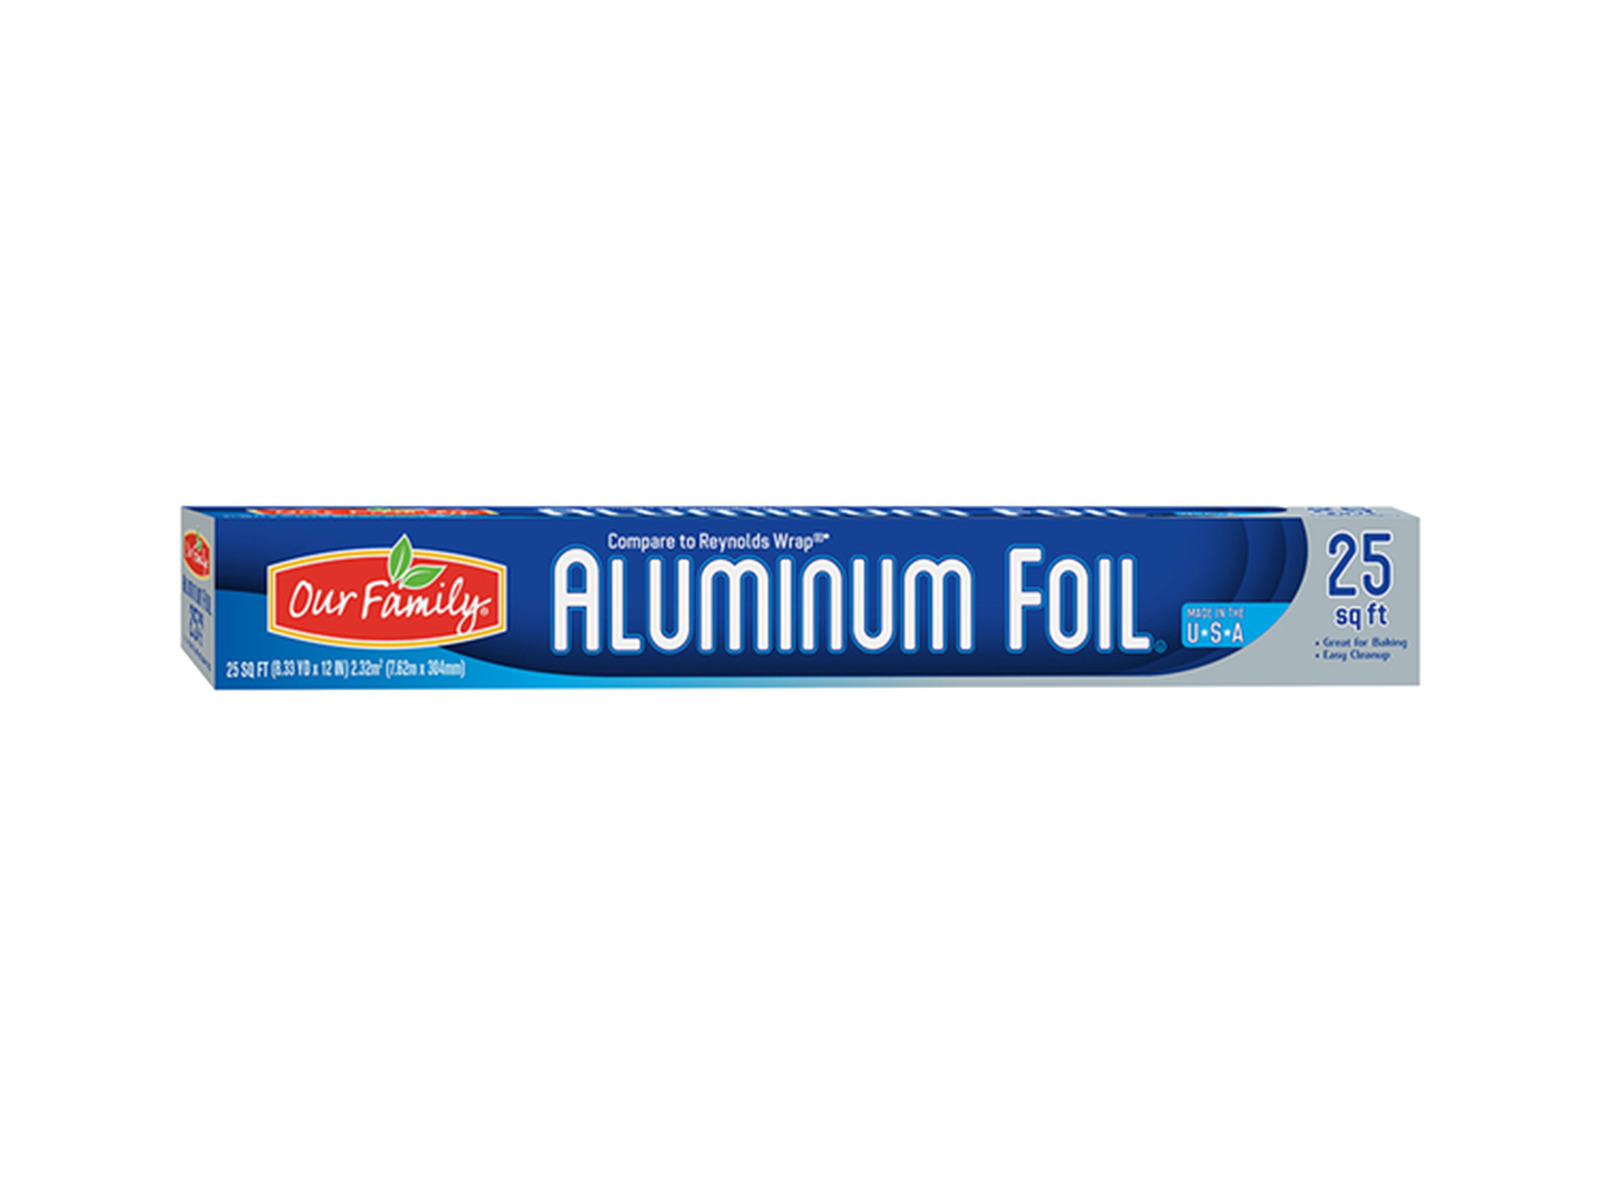 https://www.yoderscountrymarket.net/Aluminum-Foil-25ft/image/item/FDDV869535